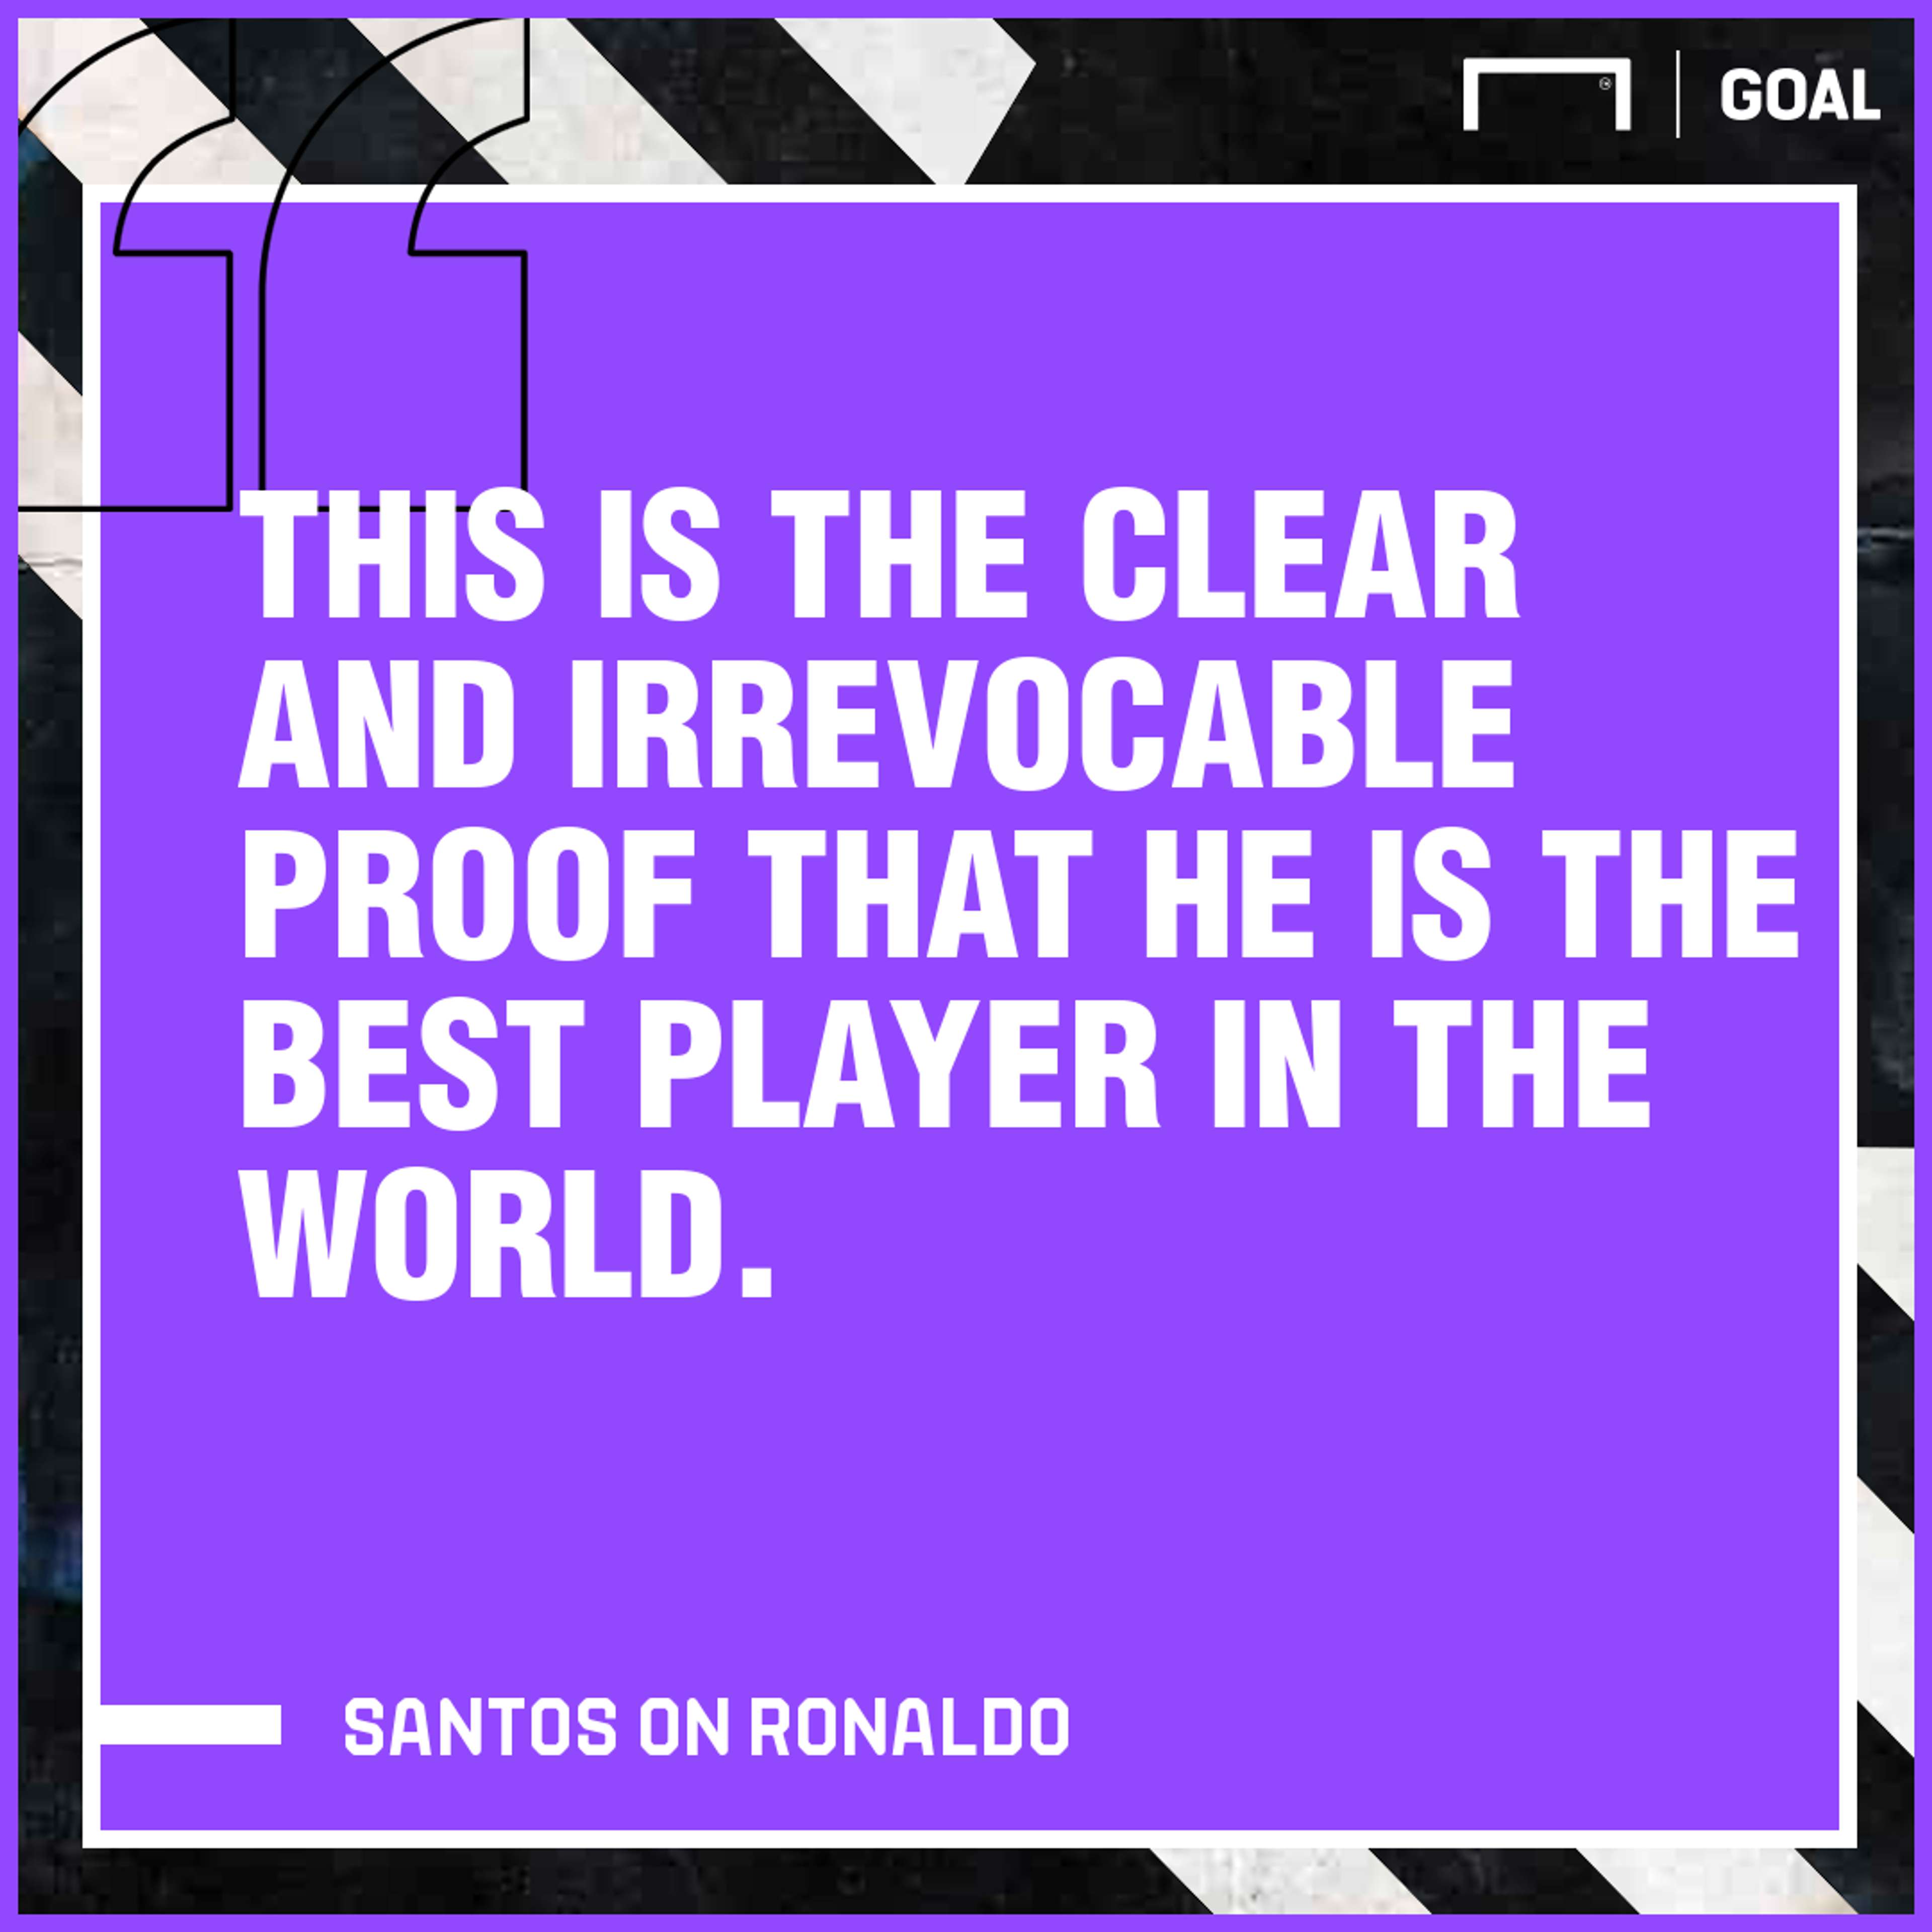 Cristiano Ronaldo Portugal 2019